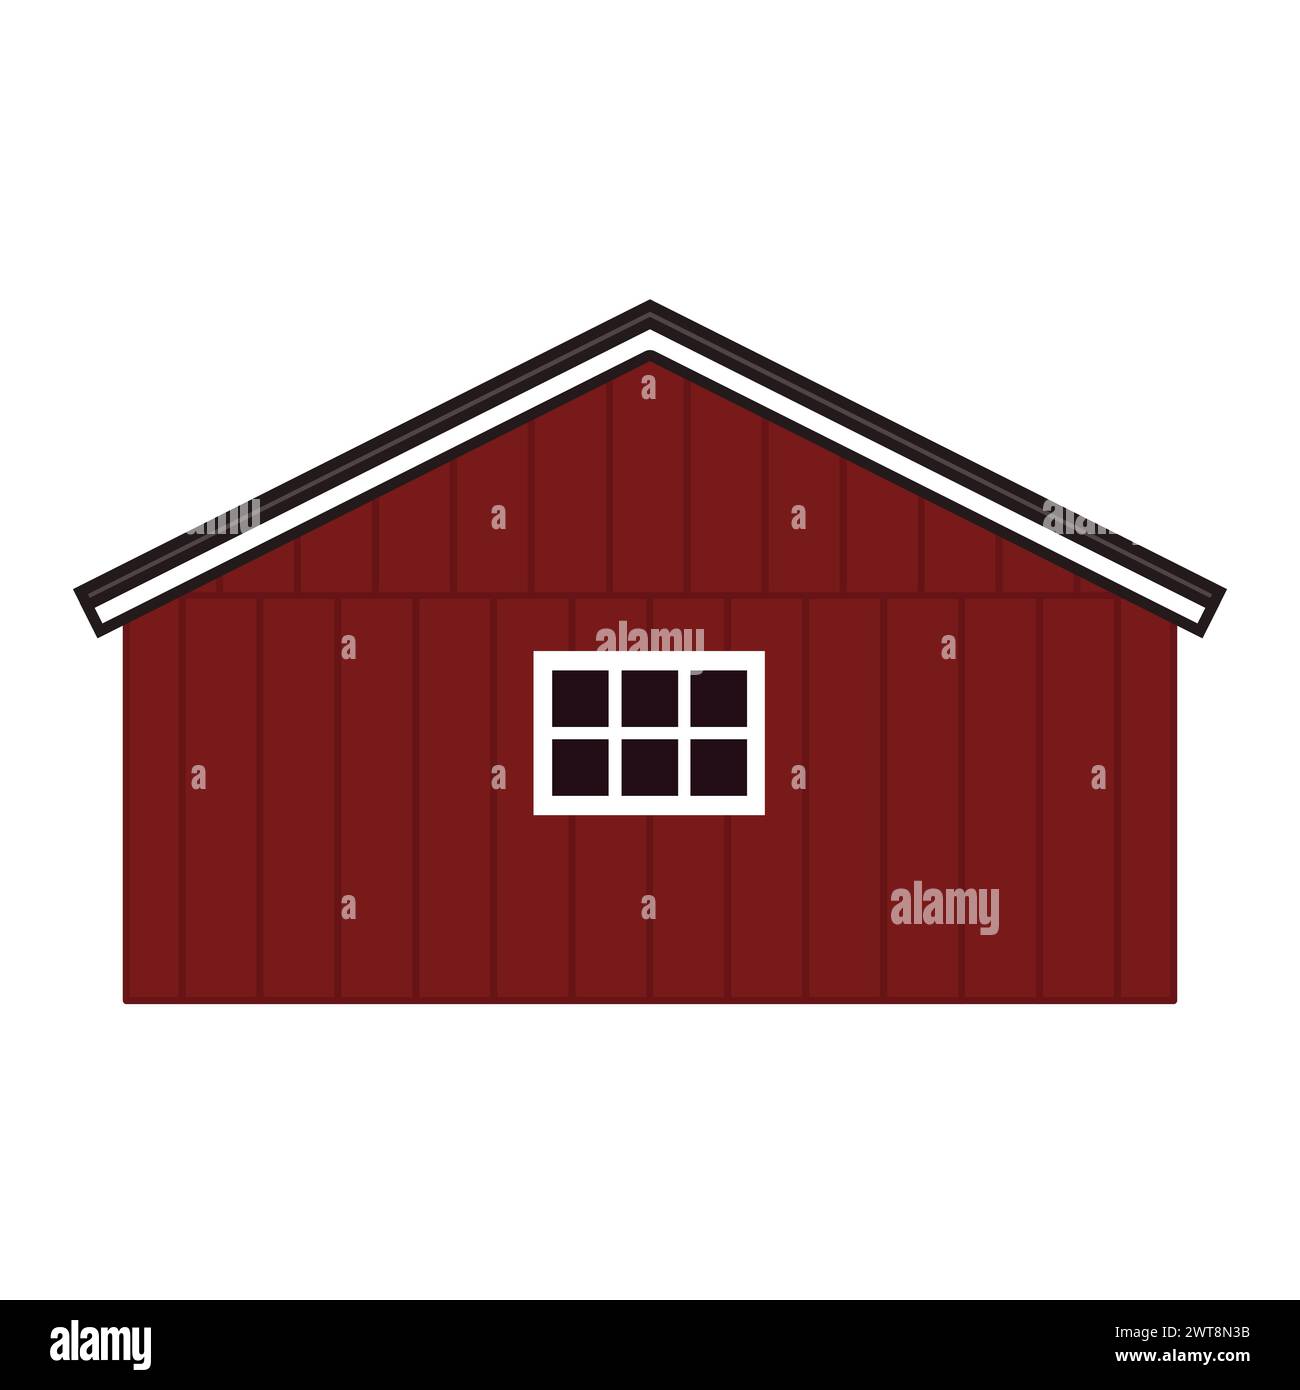 Karikaturrotes Holzscheunenhaus, graues Dach, Fenster mit Brettern. Vektorkontur isolierte handgezeichnete Illustration auf weißem Hintergrund, Vorderansicht Stock Vektor